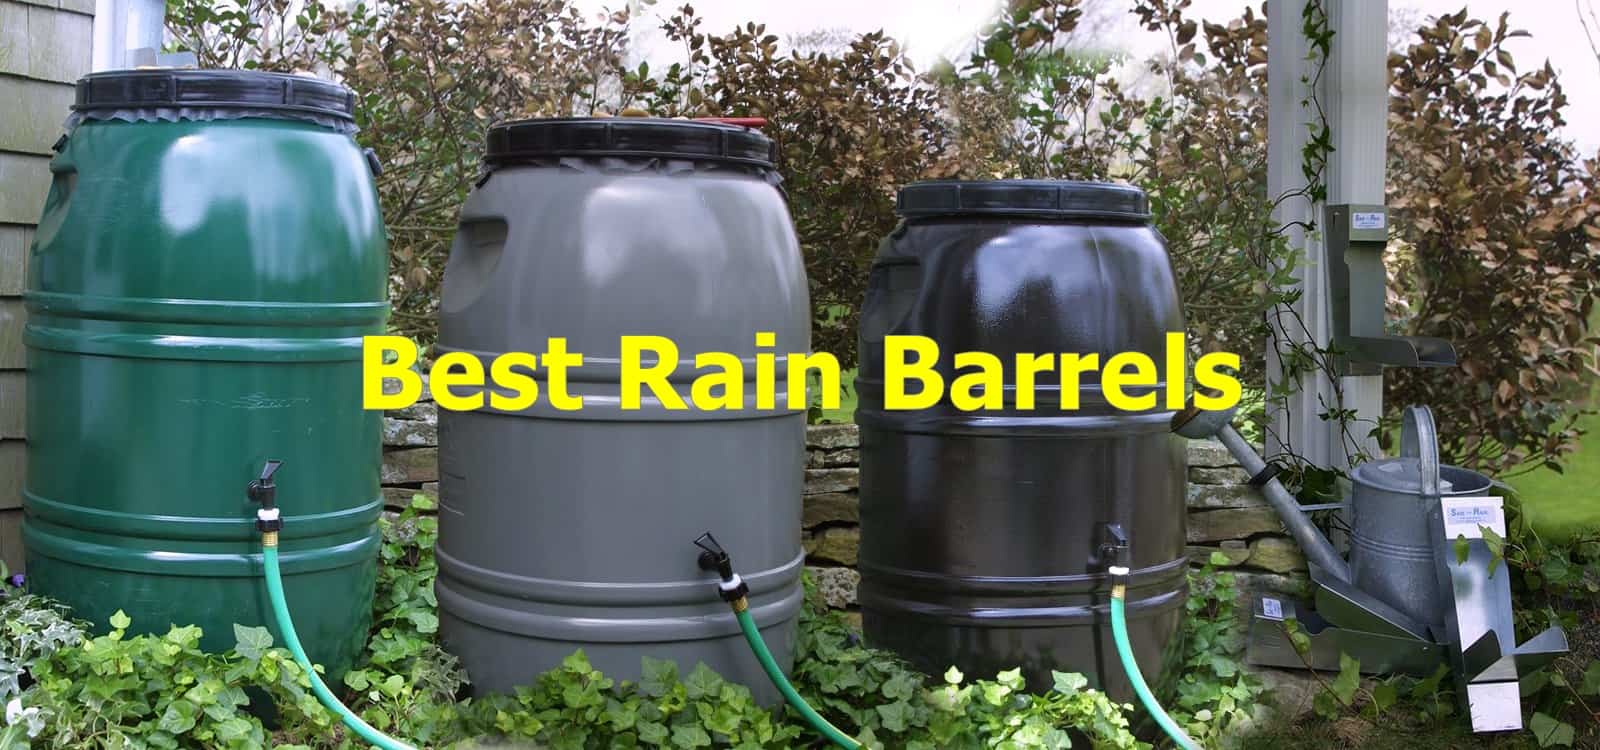 Best rain barrels.